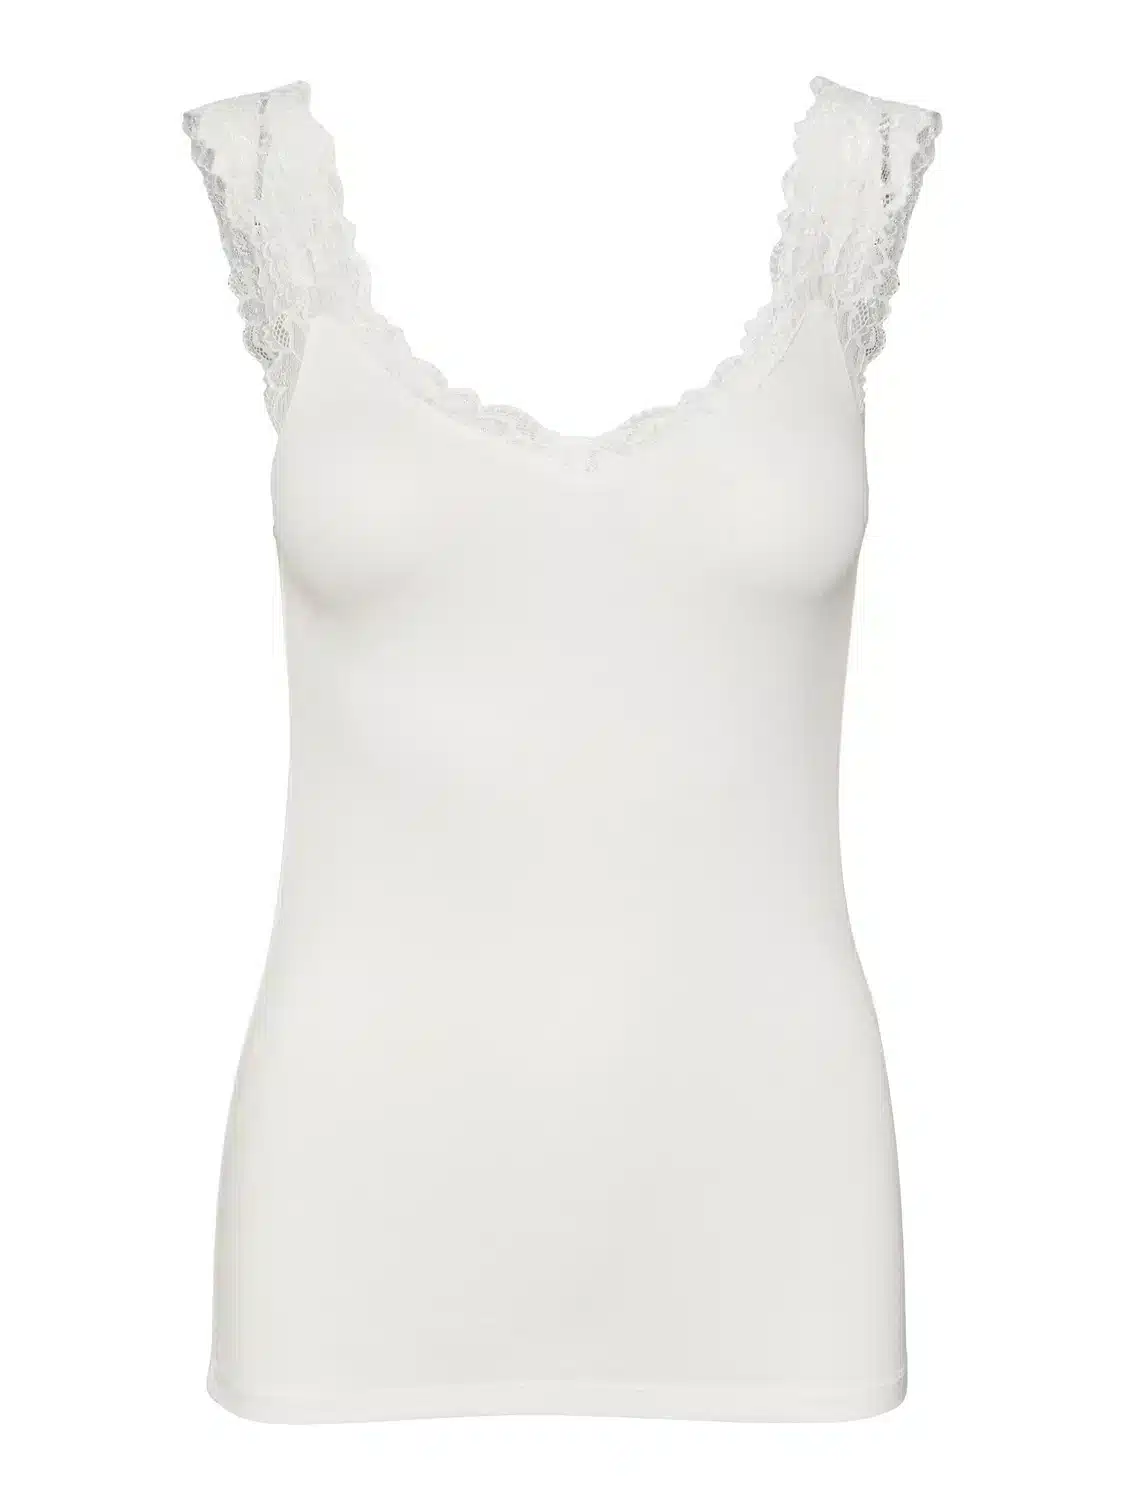 Rosa Vest Top – White Lace